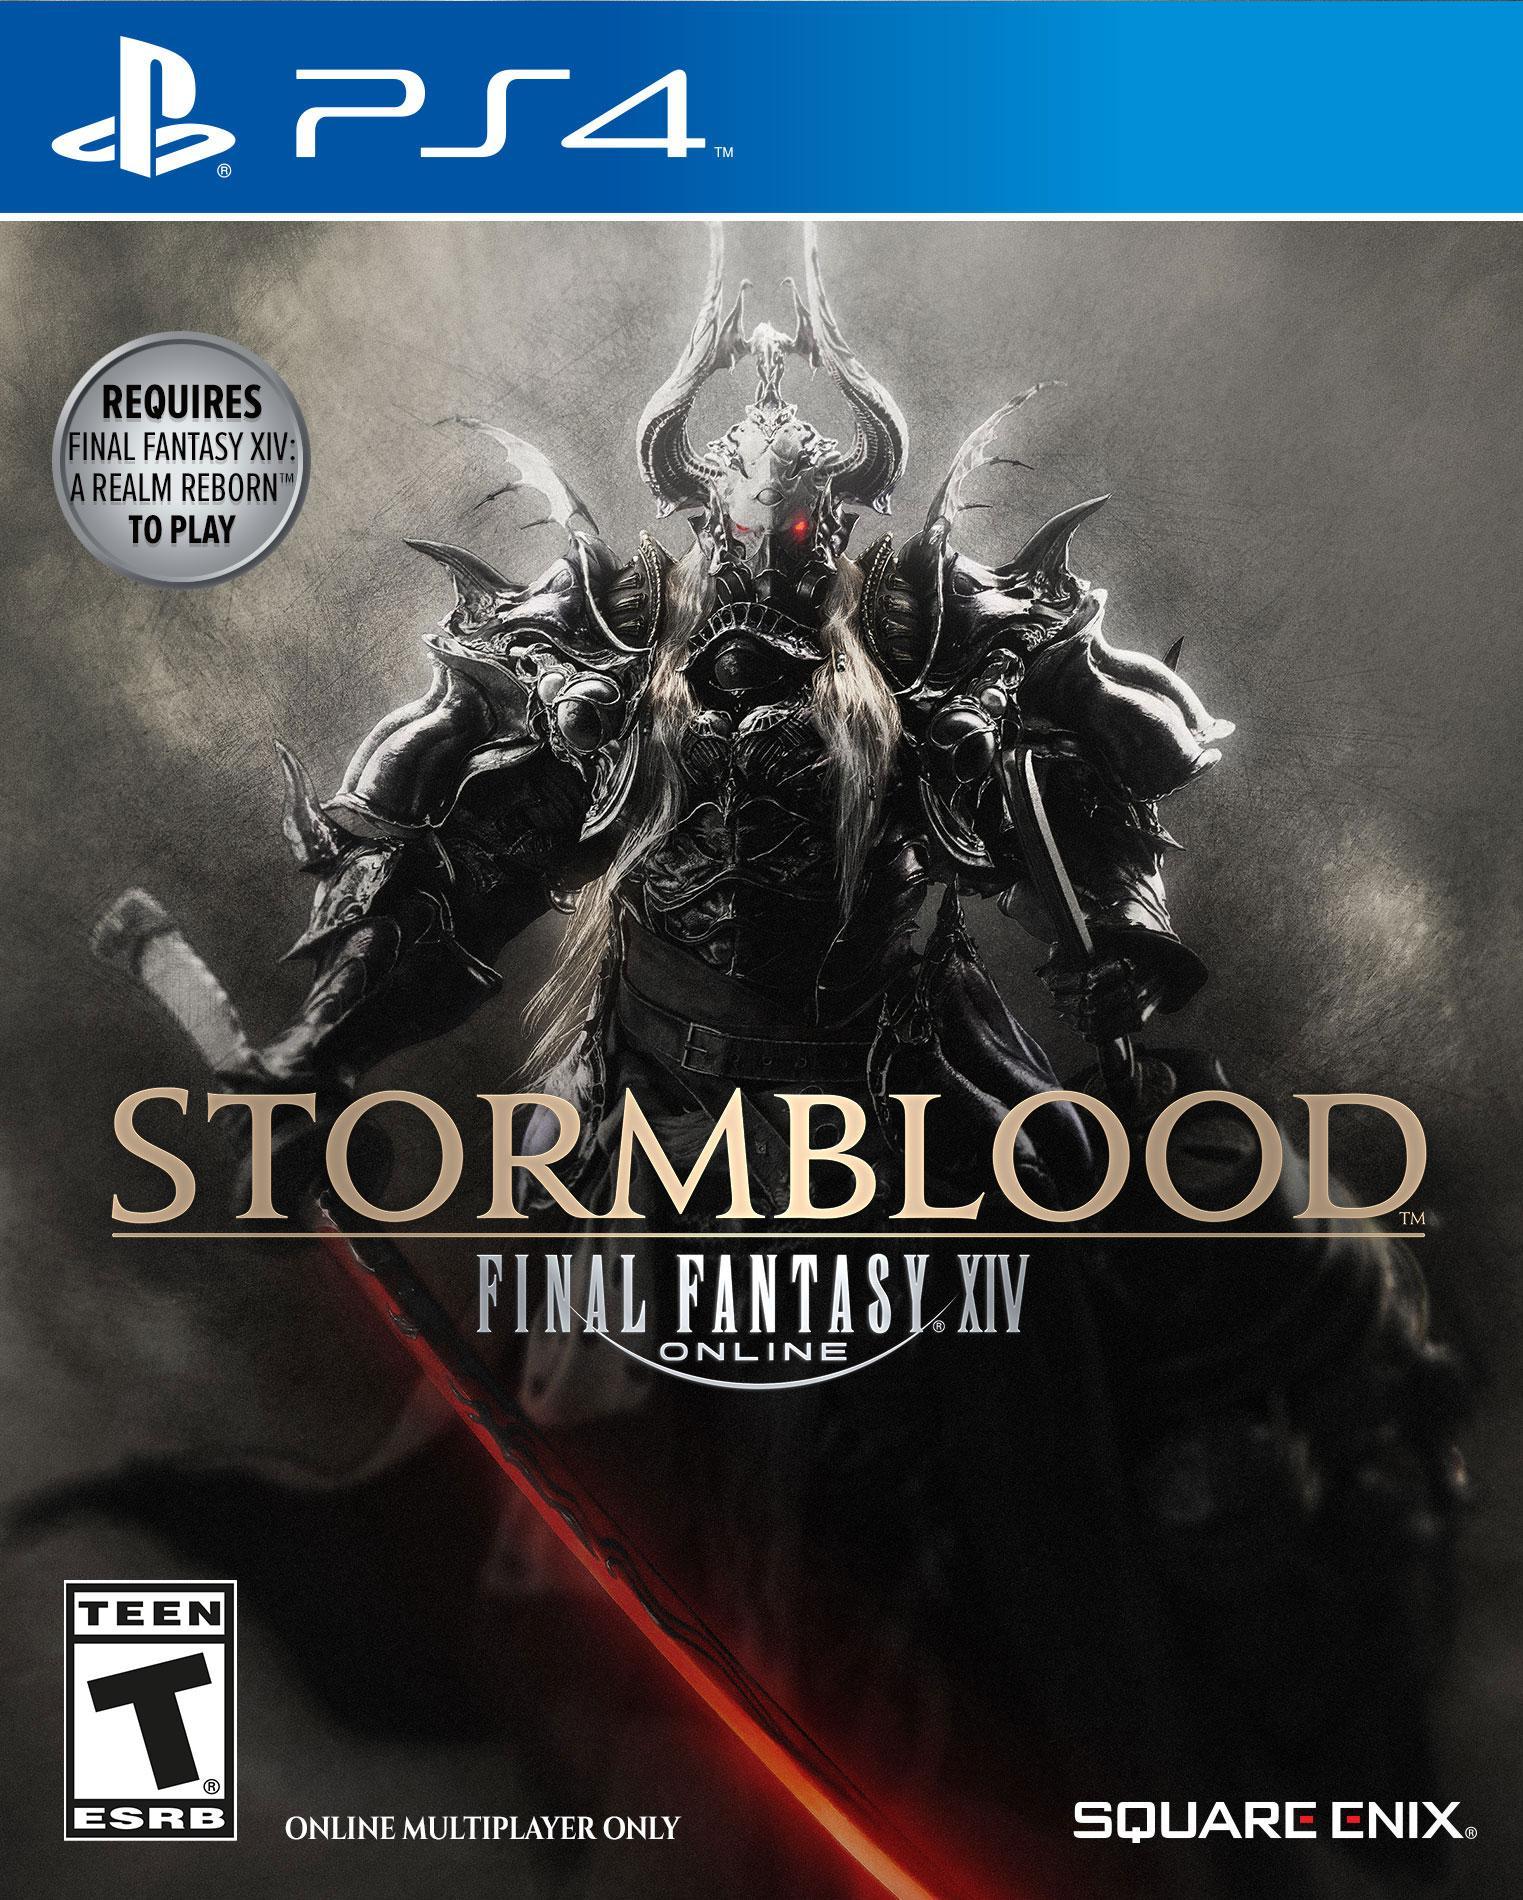 Final Fantasy XIV: Stormblood: Final Fantasy Xiv